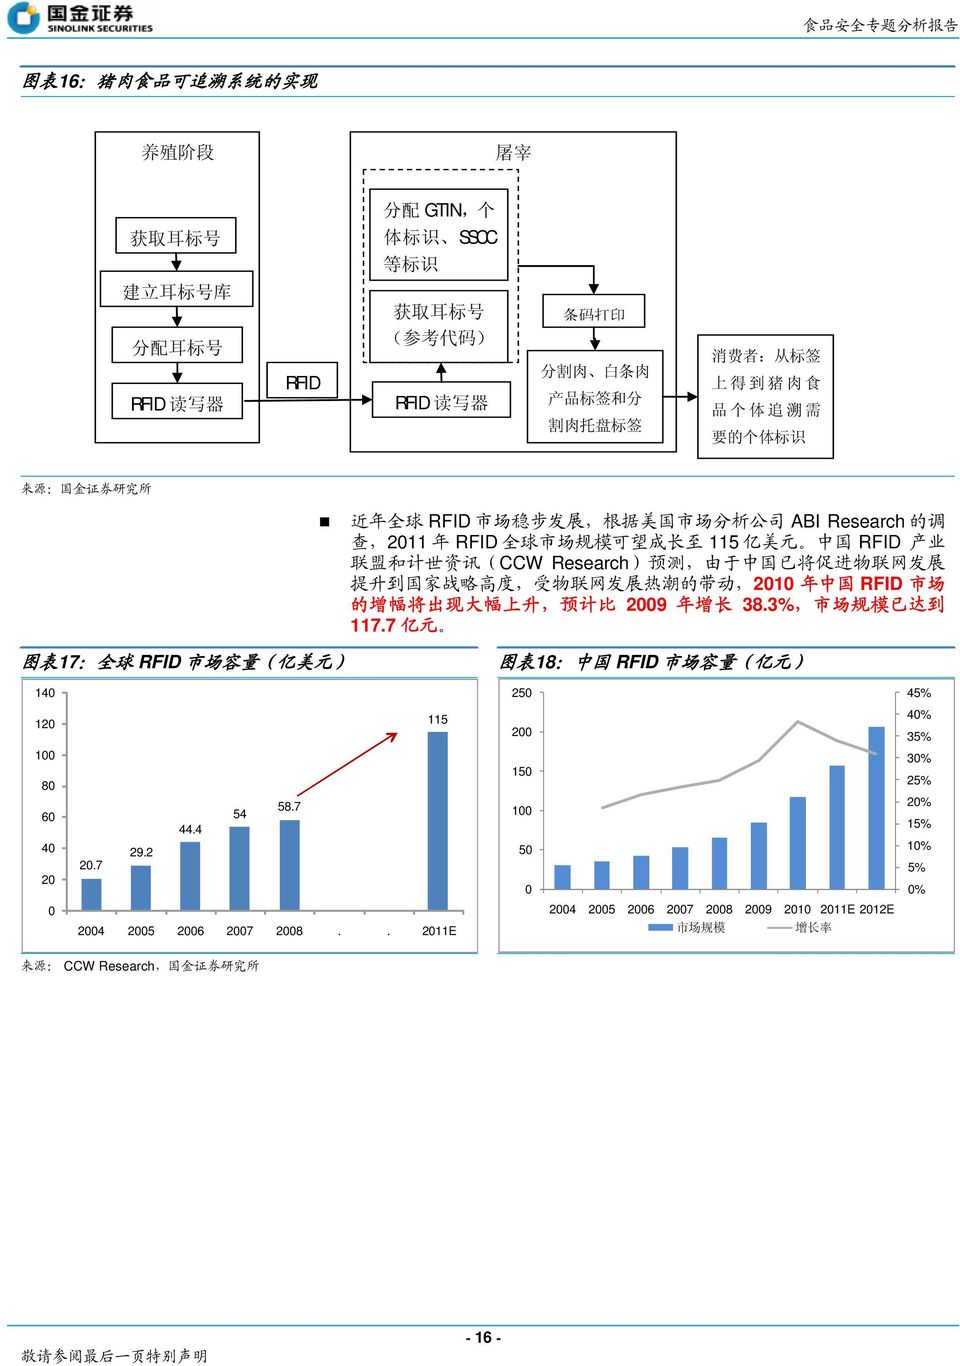 预 测, 由 于 中 国 已 将 促 进 物 联 网 发 展 提 升 到 国 家 战 略 高 度, 受 物 联 网 发 展 热 潮 的 带 动,2010 年 中 国 RFID 市 场 的 增 幅 将 出 现 大 幅 上 升, 预 计 比 2009 年 增 长 38.3%, 市 场 规 模 已 达 到 117.